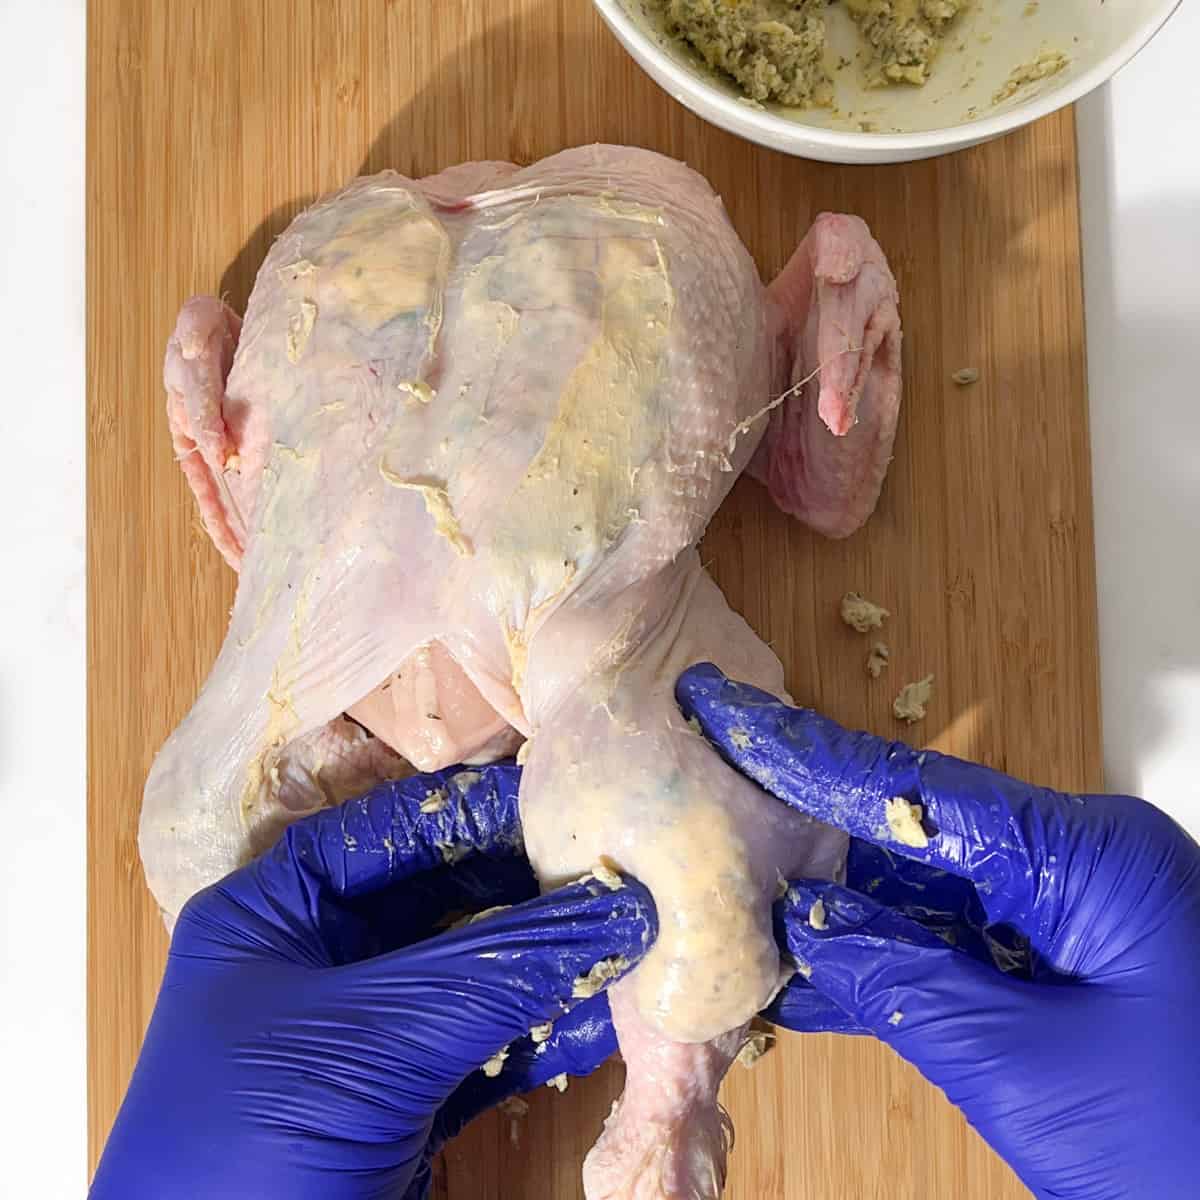 Stuffing compound butter under the chicken leg skin.